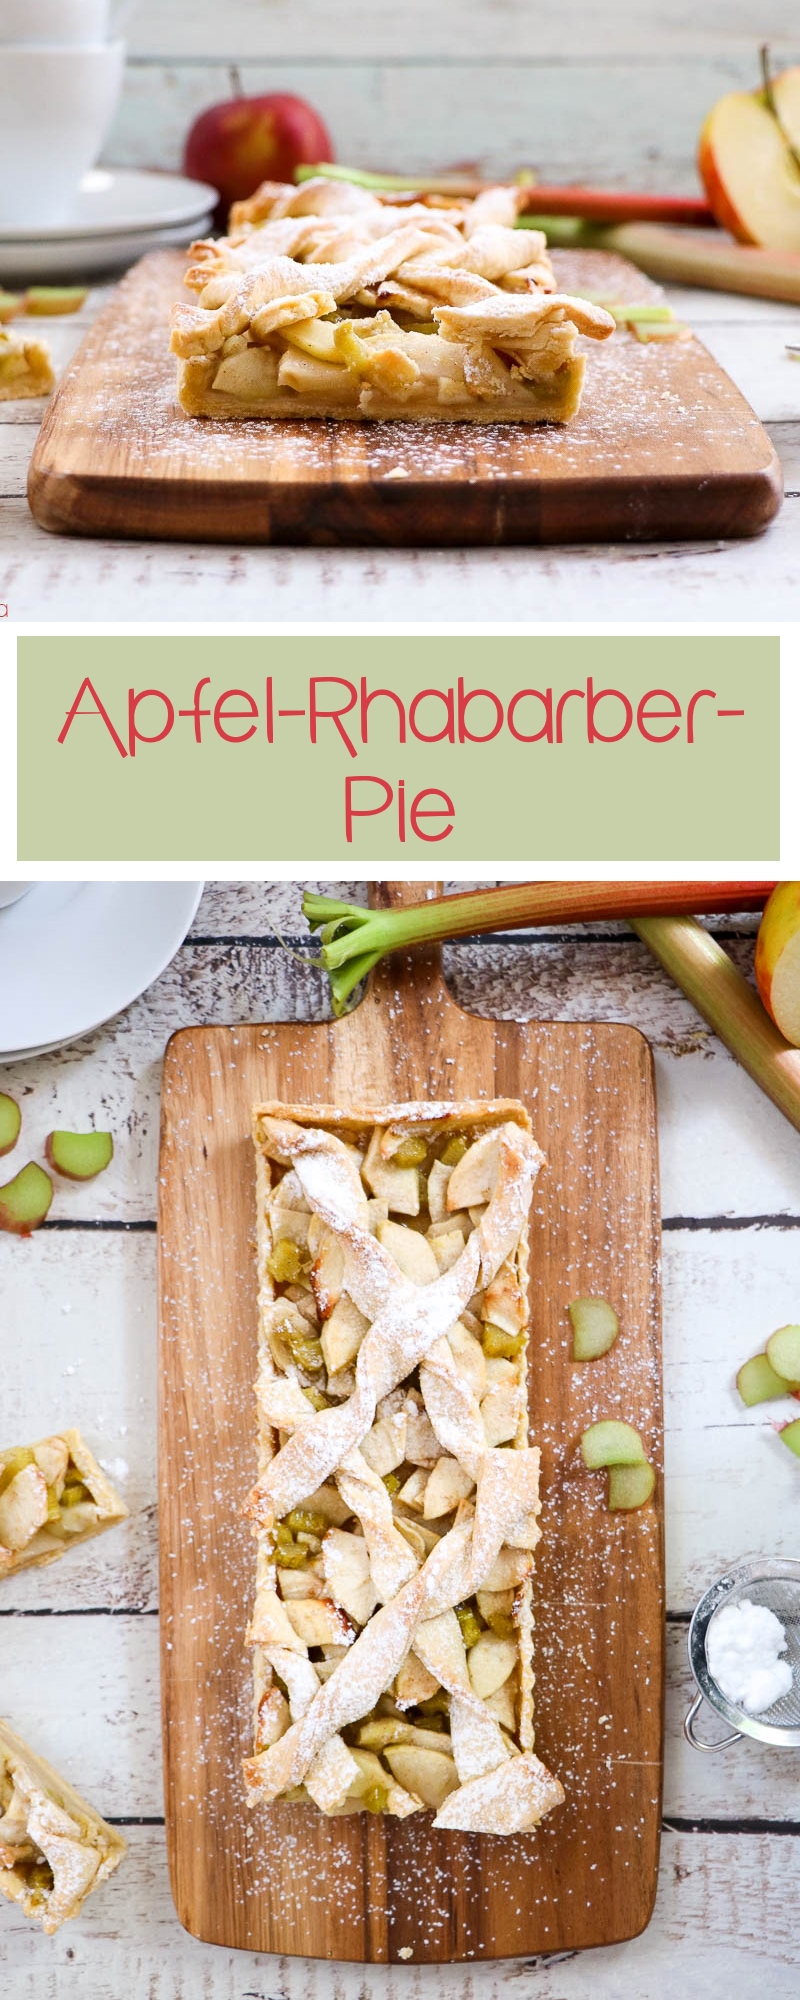 Rhabarber kündigt den Frühlingsbeginn an. Deswegen braucht es viele tolle Rezeptideen wie diesen Apfel-Rhabarber-Pie, damit ich in Frühlingsstimmung komme. Geht´s euch genau so? Dann schaut am besten auf den Blog von Cook and Bake with Andrea für mehr Inspiration.